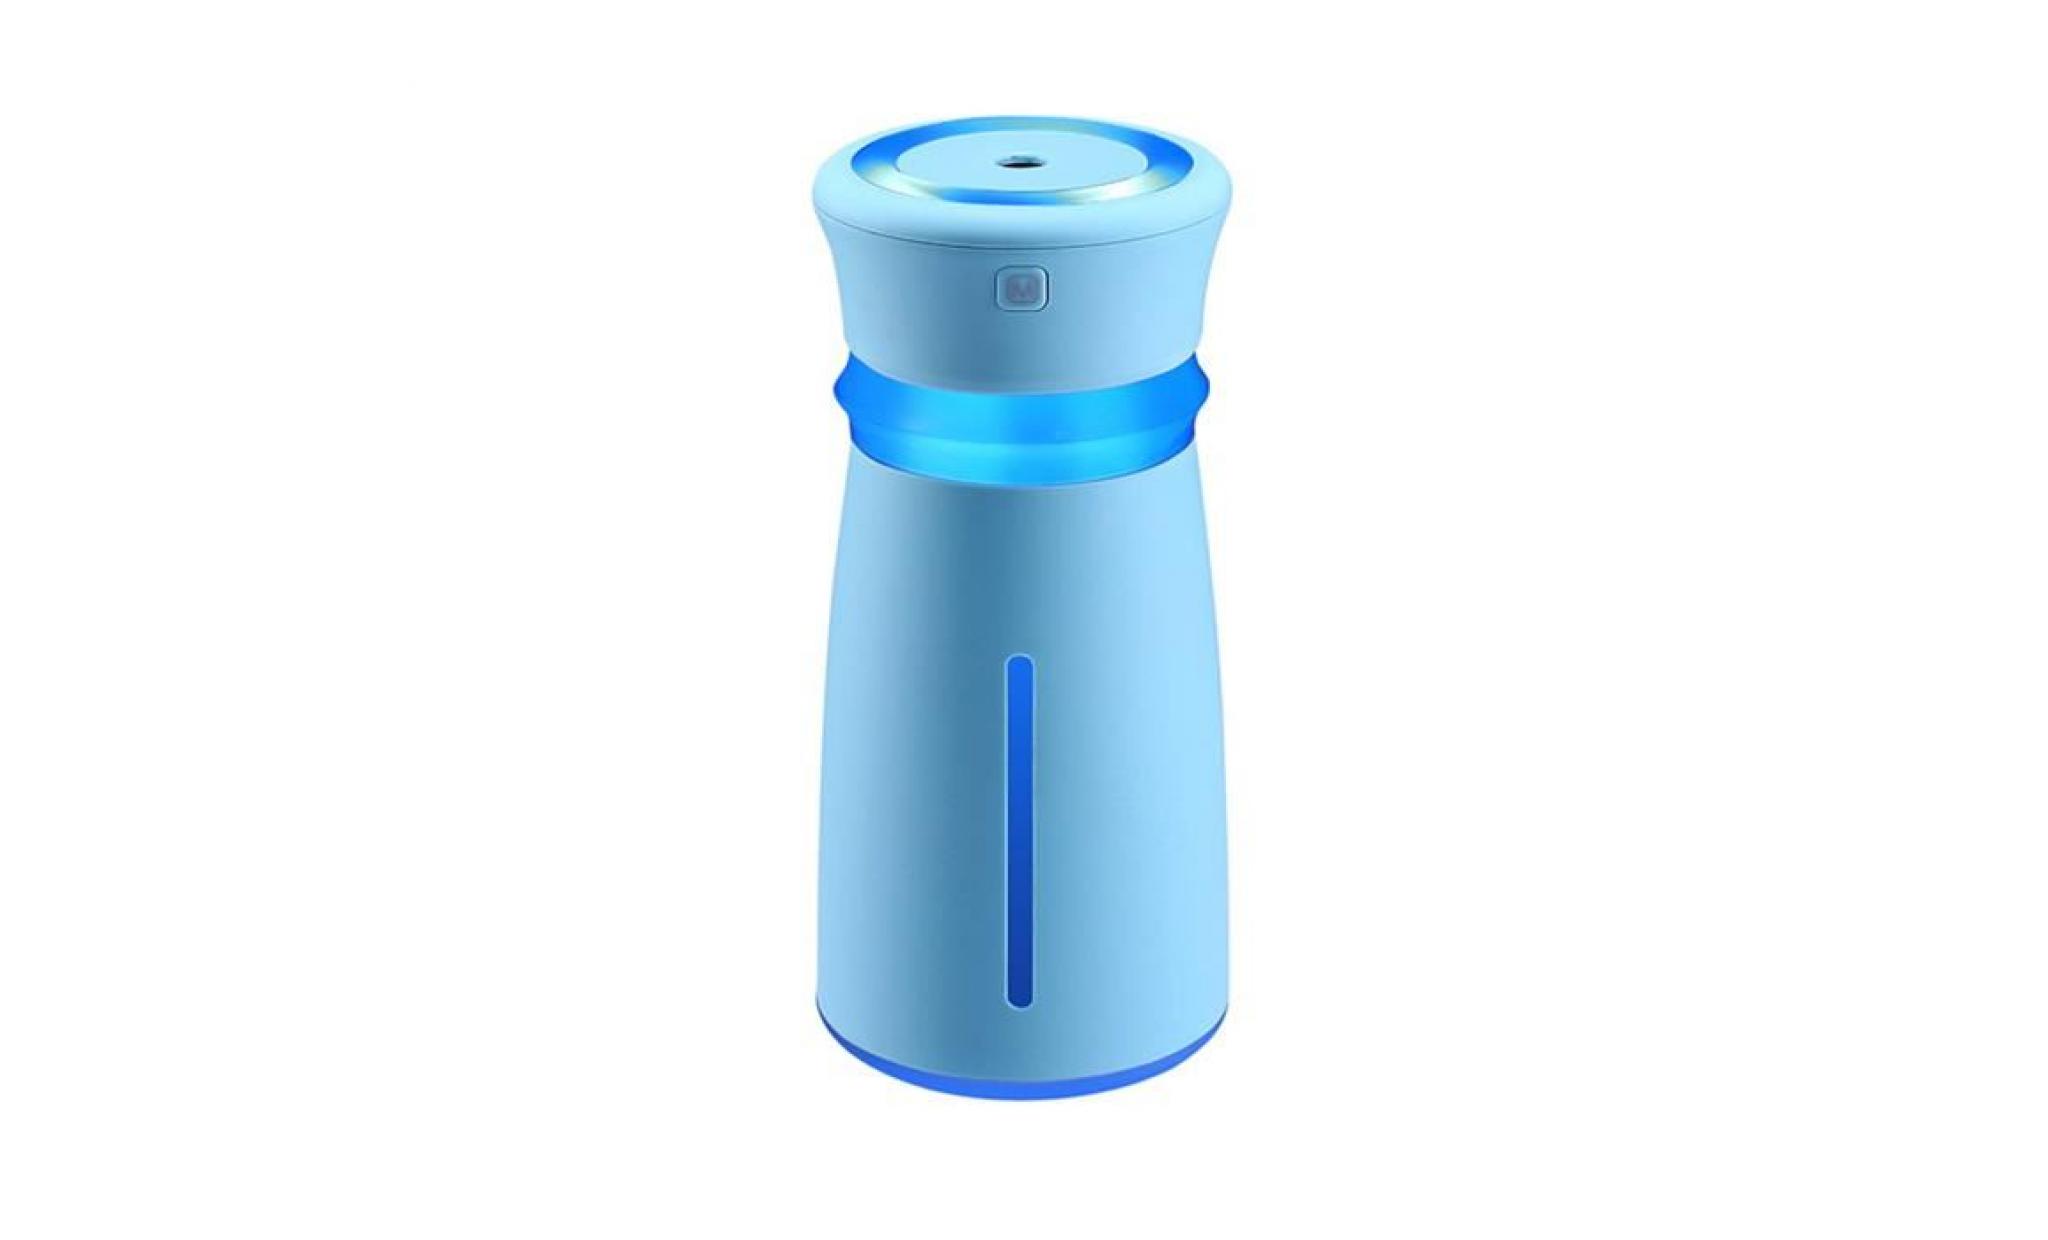 diffuseur d'huiles essentielles, diffuseur aroma et humidificateur avec 7 couleurs，300ml  bleu